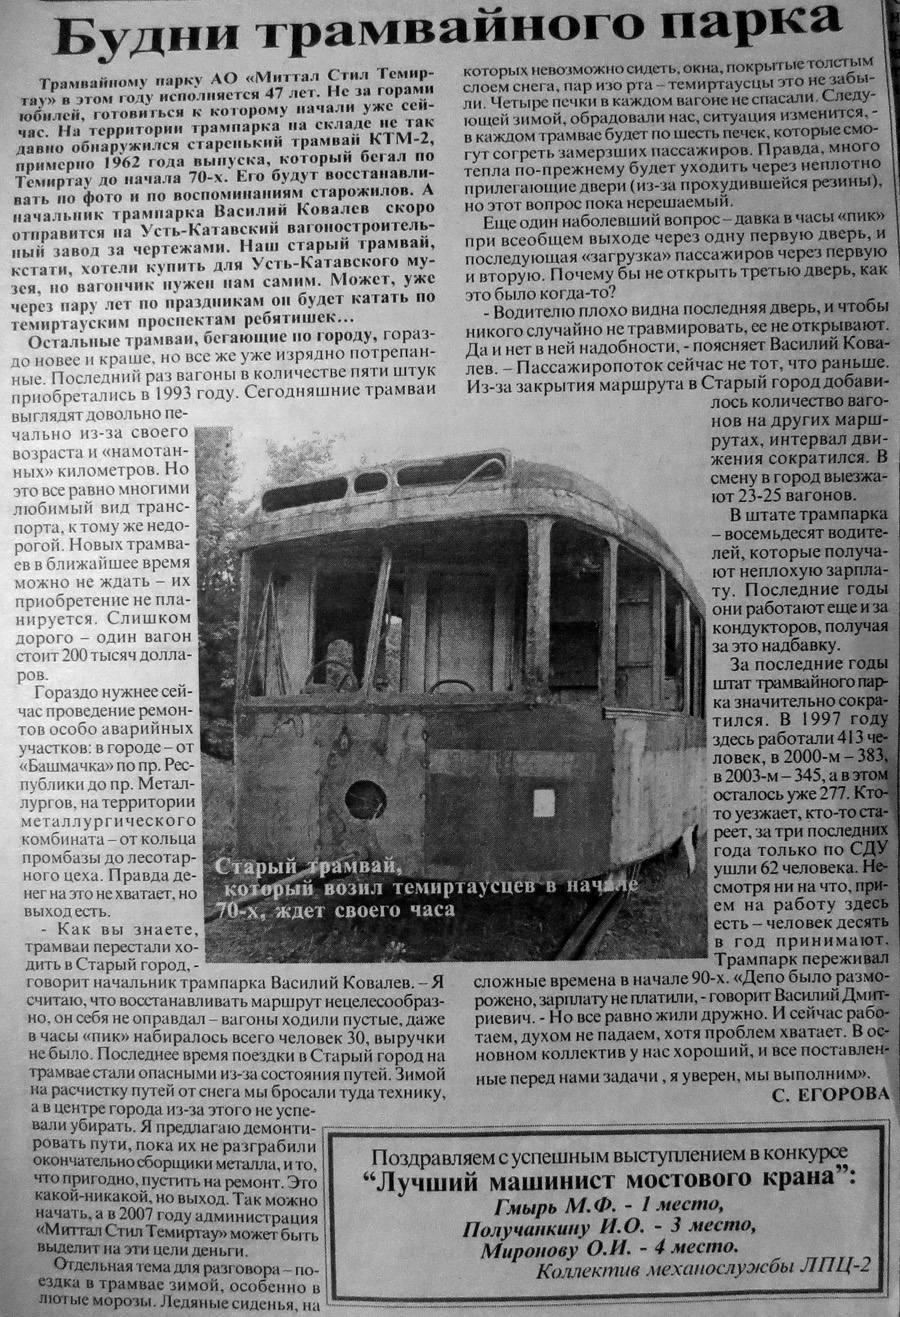 Темиртау — Трамвай-памятник КТМ-2; Темиртау — Транспортные статьи